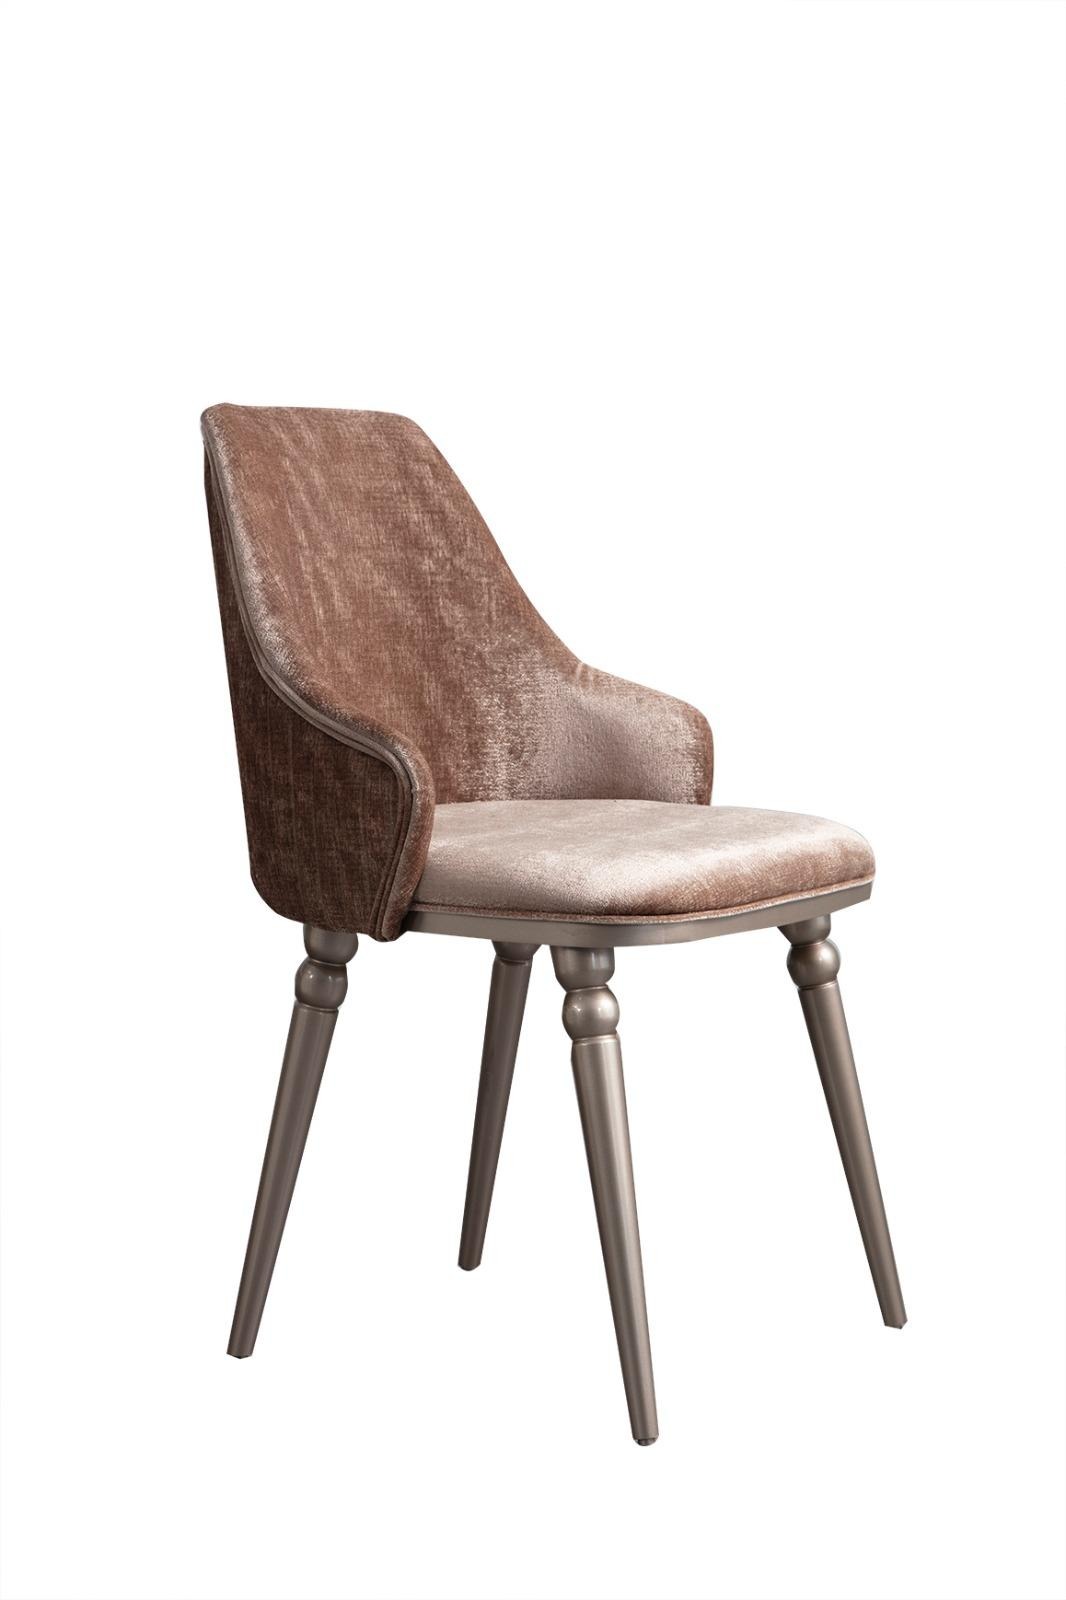 Moderner Holz Stuhl Esszimmer Luxus Stühle Sessel Lehnstuhl Holzstuhl